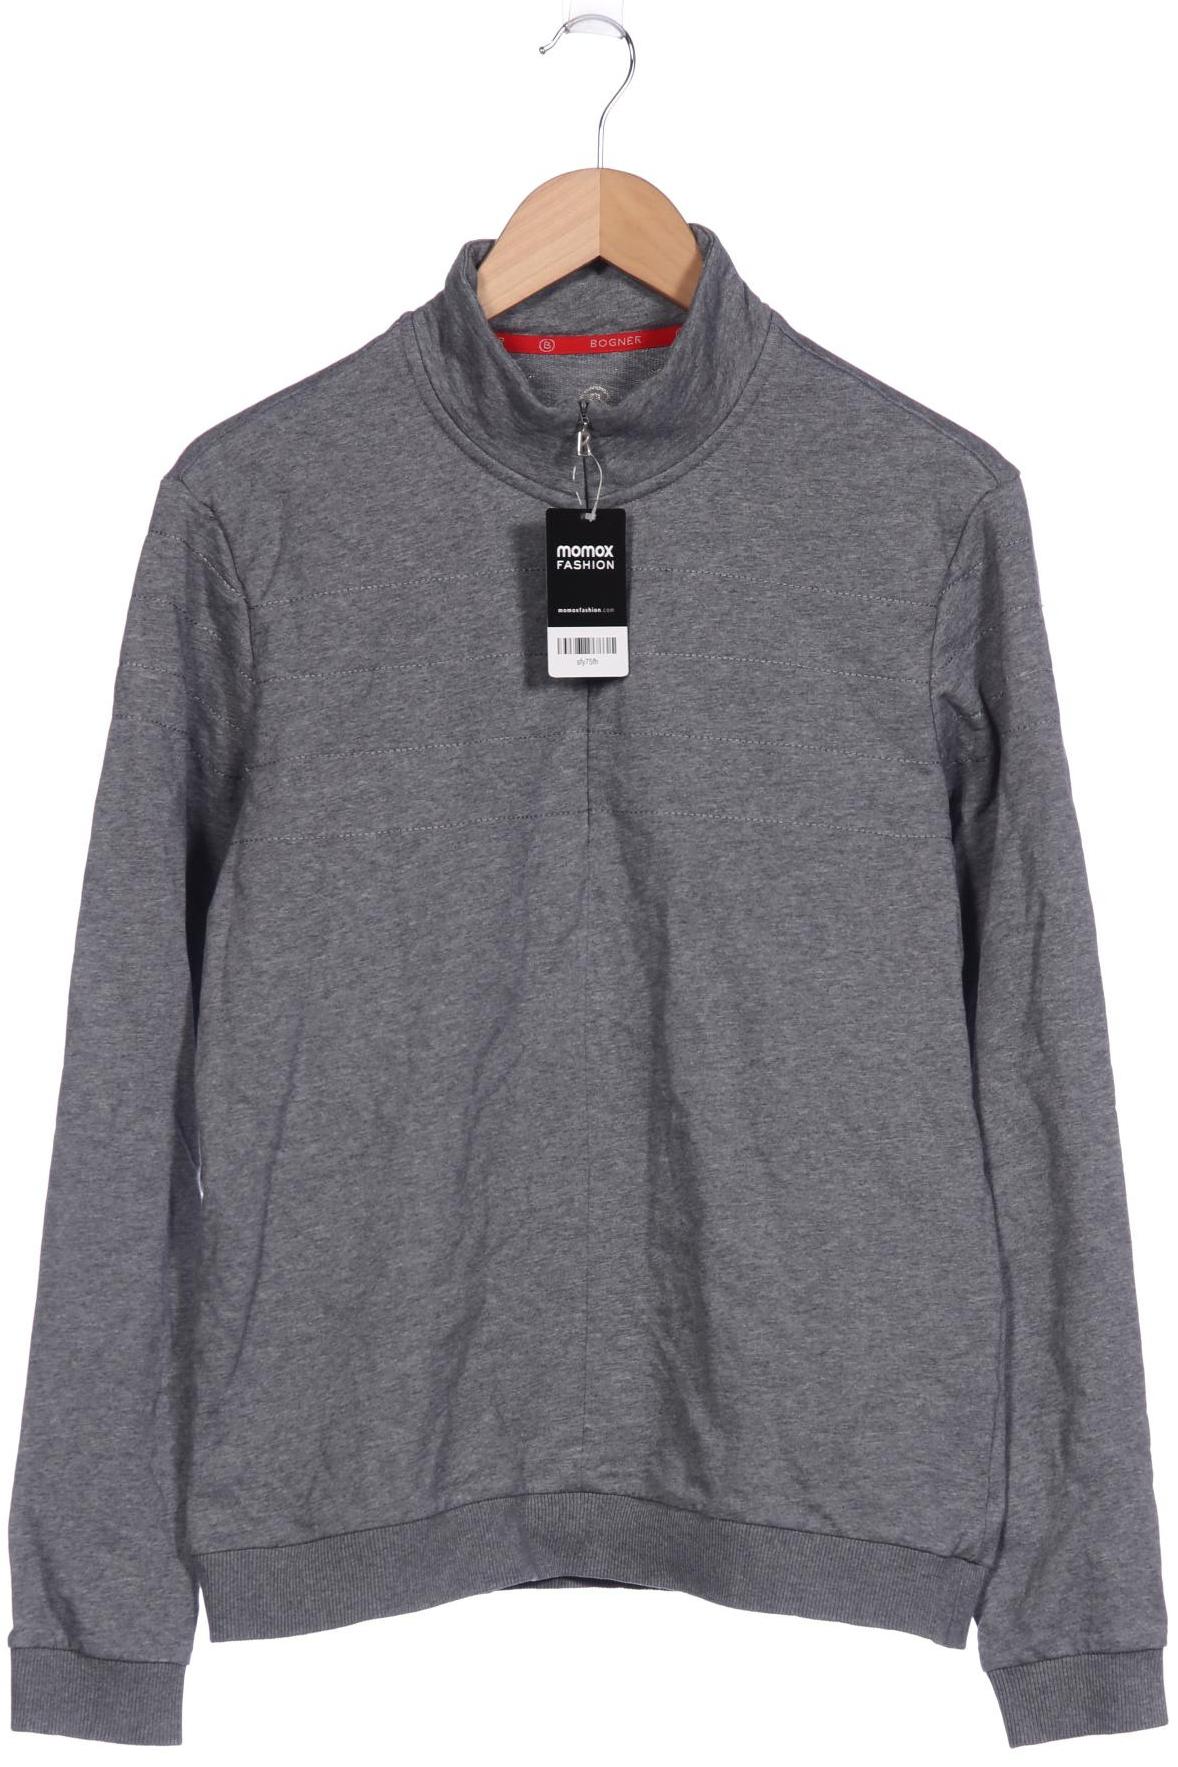 Bogner Damen Sweatshirt, grau, Gr. 50 von Bogner